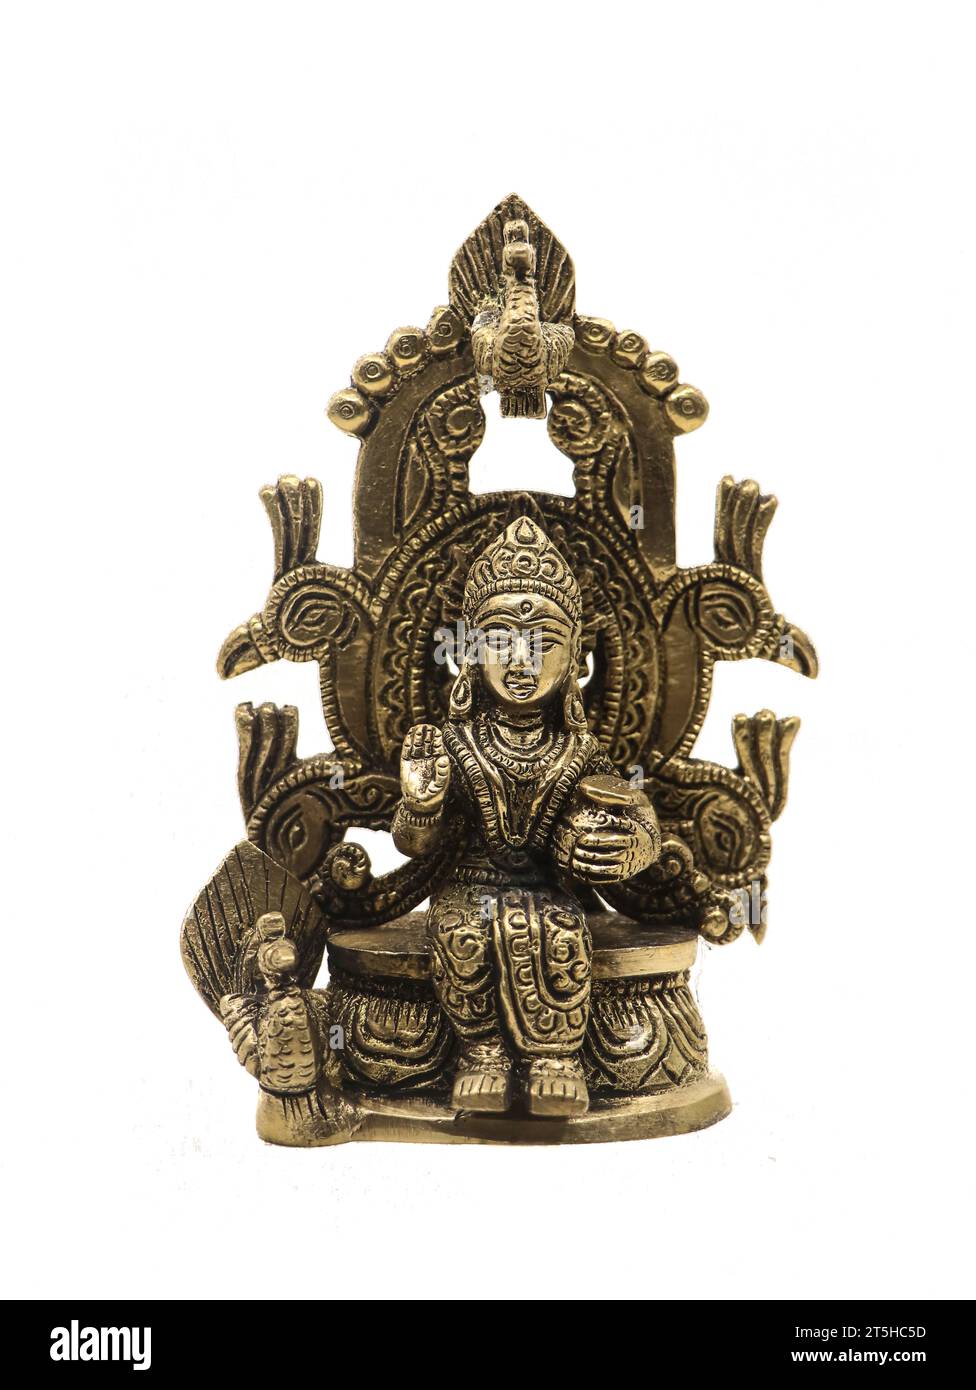 Lady radha, Frau von Lord krishna, sitzt auf einem Pfauenthron, Messing-Idol isoliert auf weißem Hintergrund Stockfoto